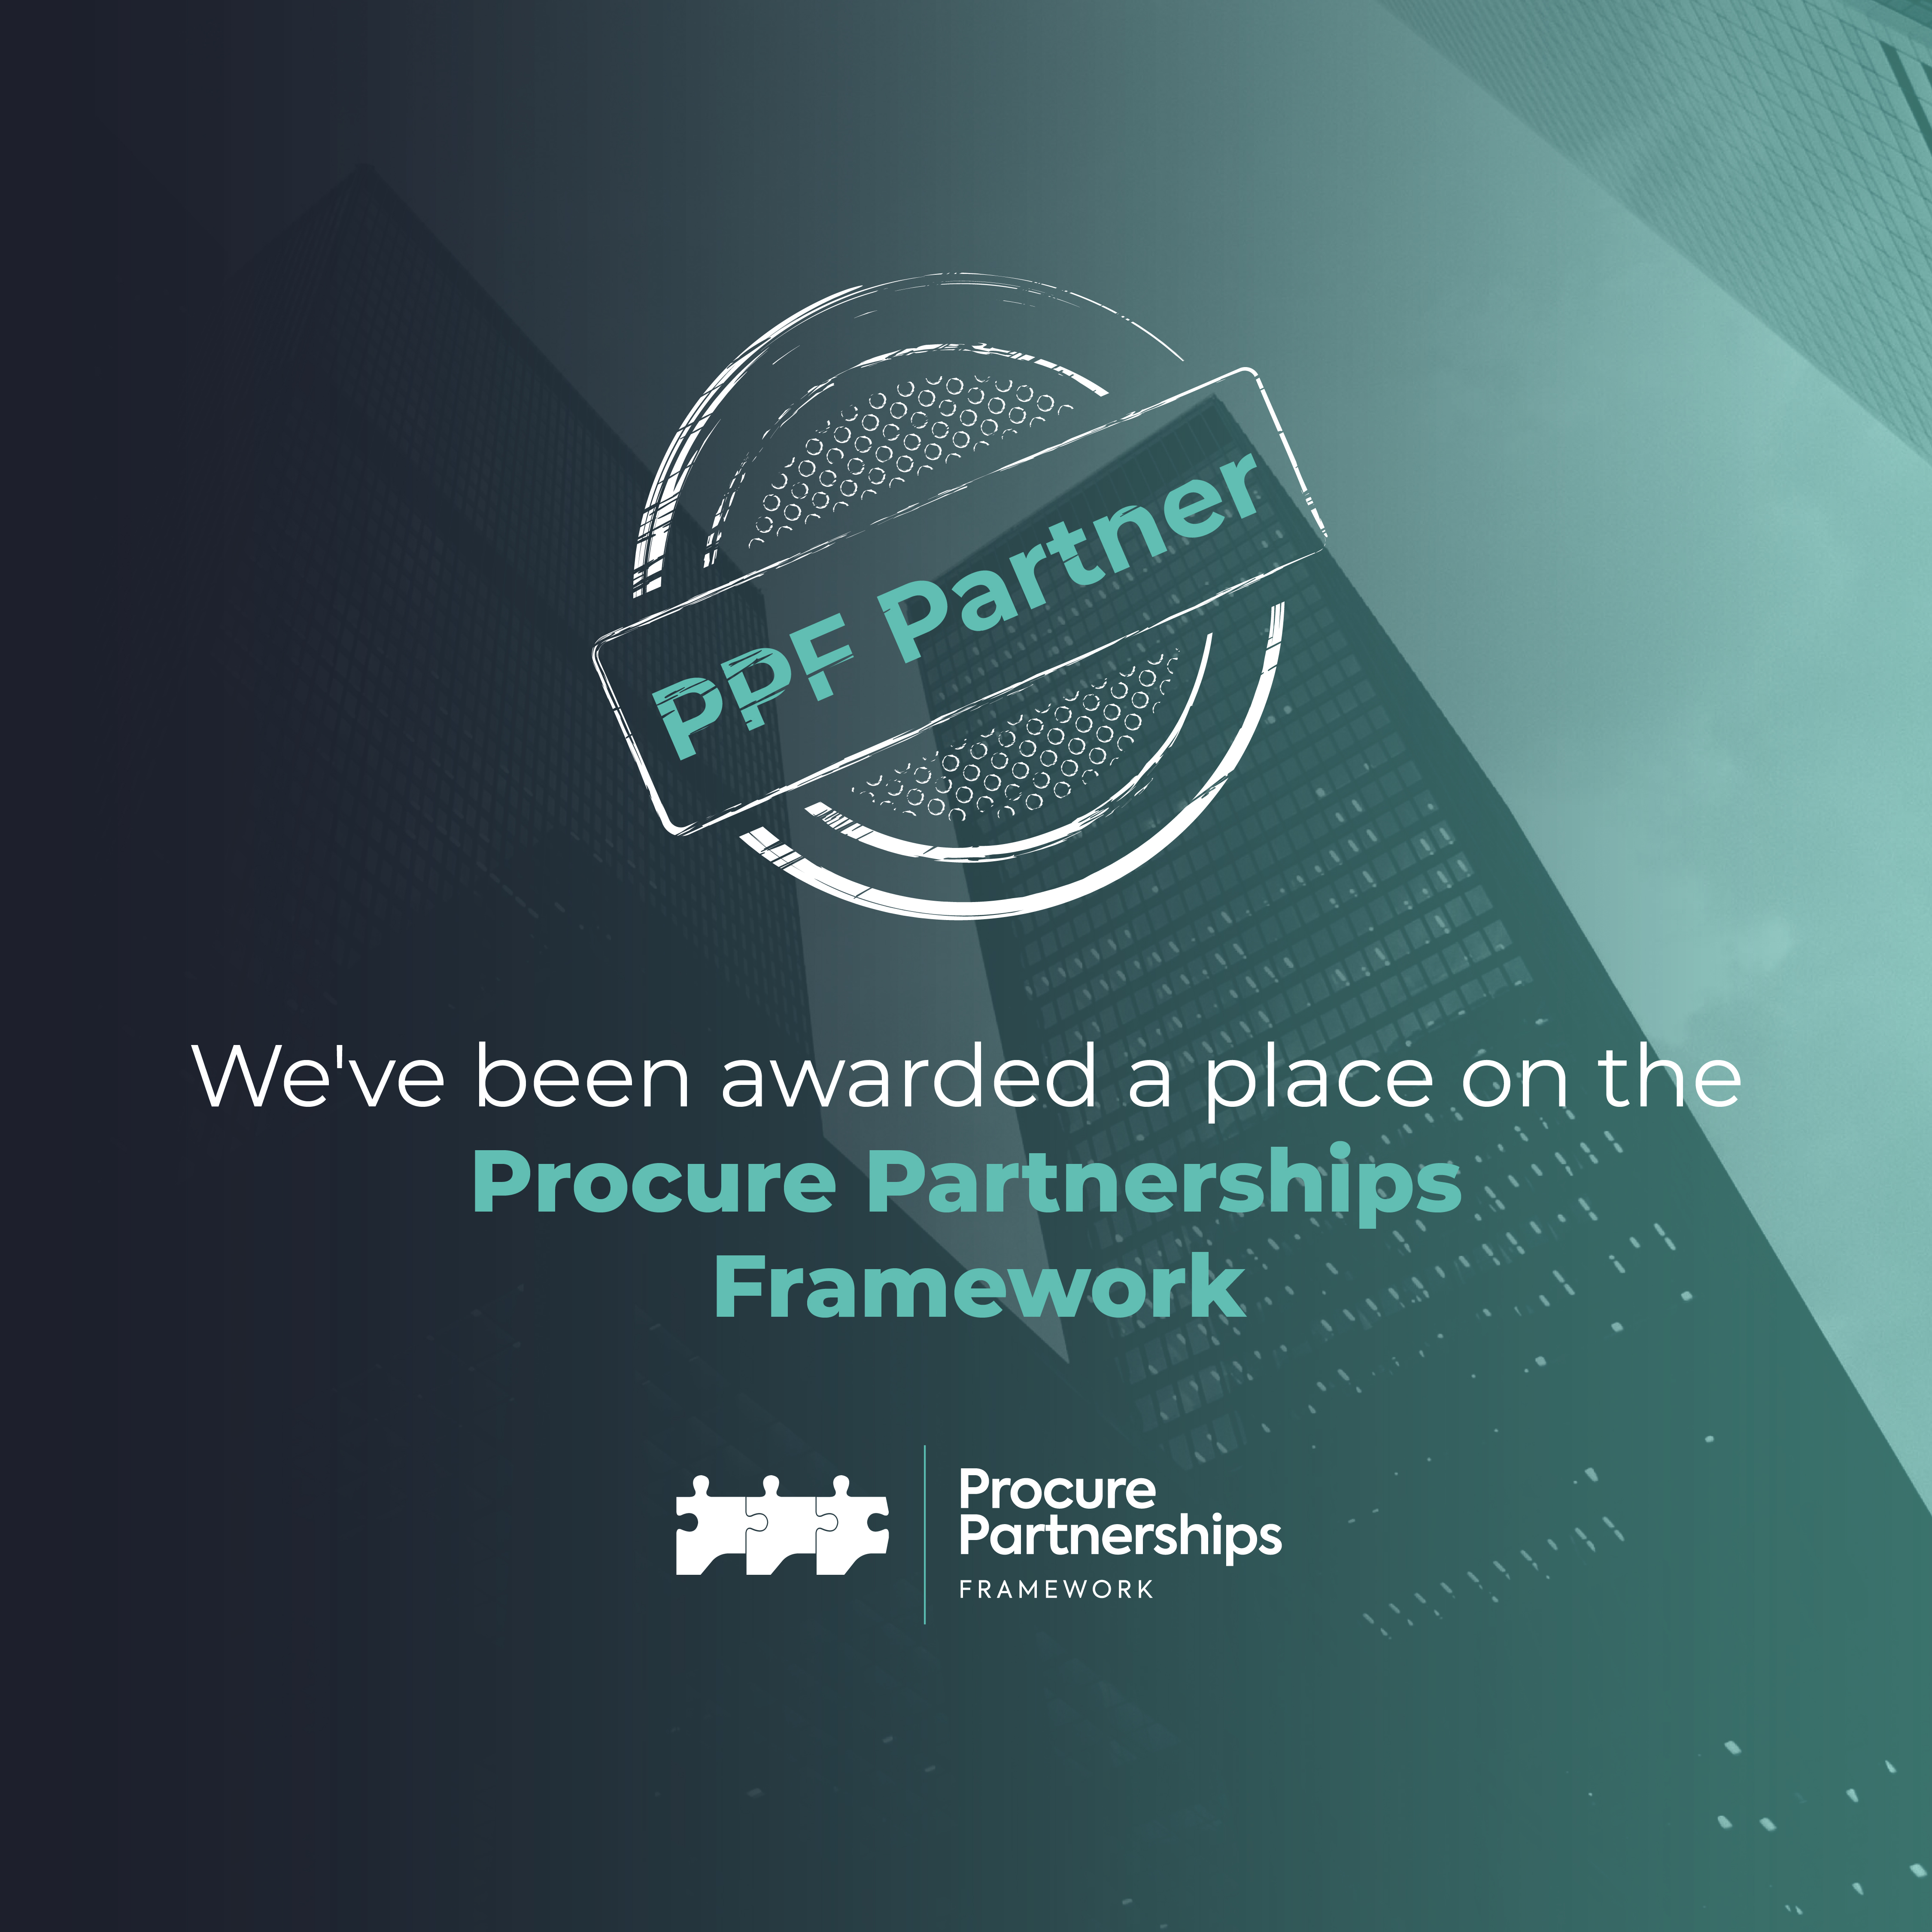 Procure Partnerships Framework image